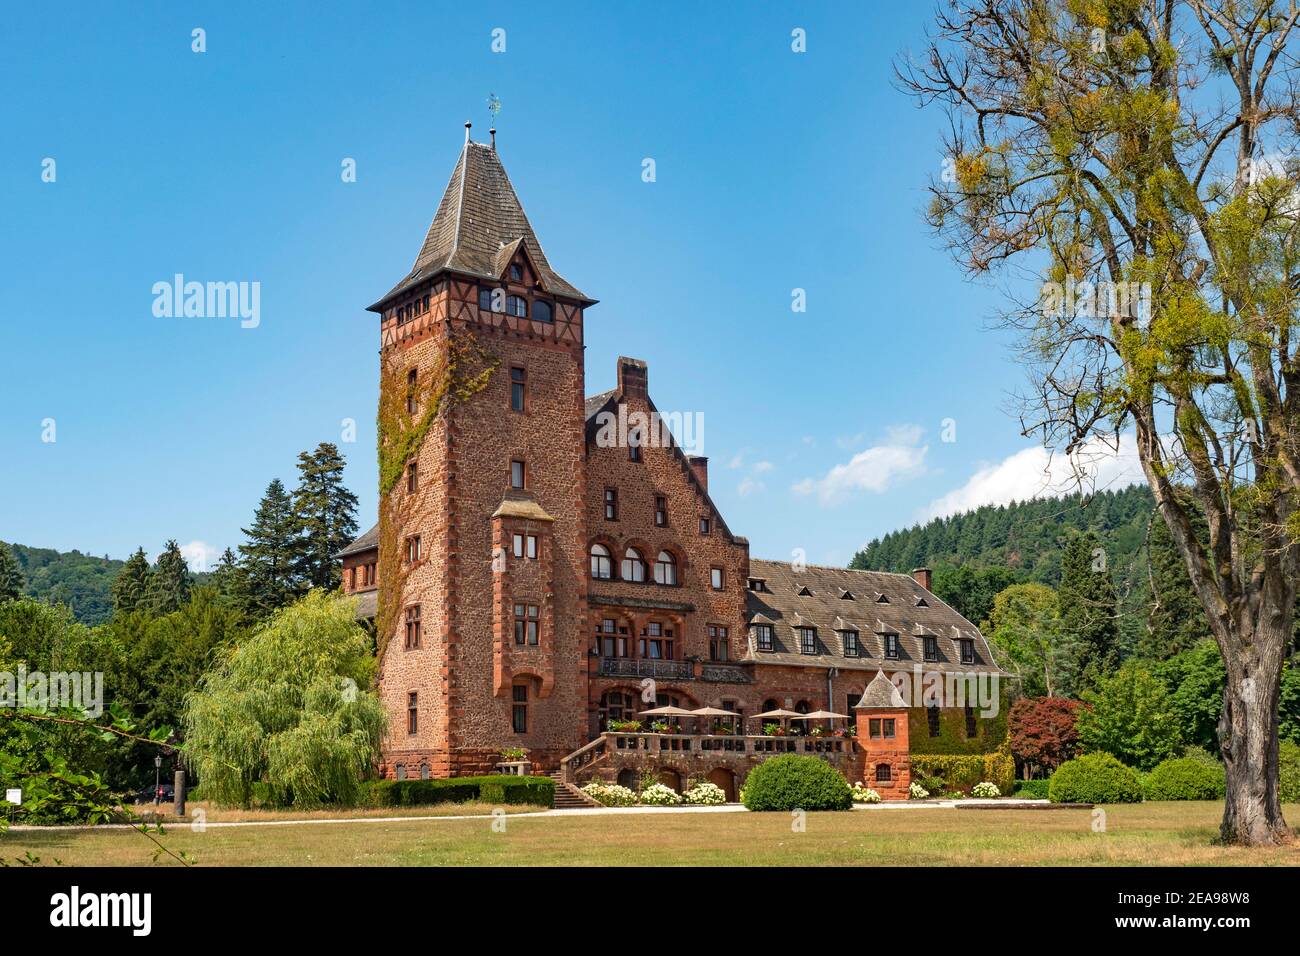 Château de Saarreck, maison d'hôtes par Villeroy & Boch, Mettlach, Saartal, Sarre, Allemagne Banque D'Images